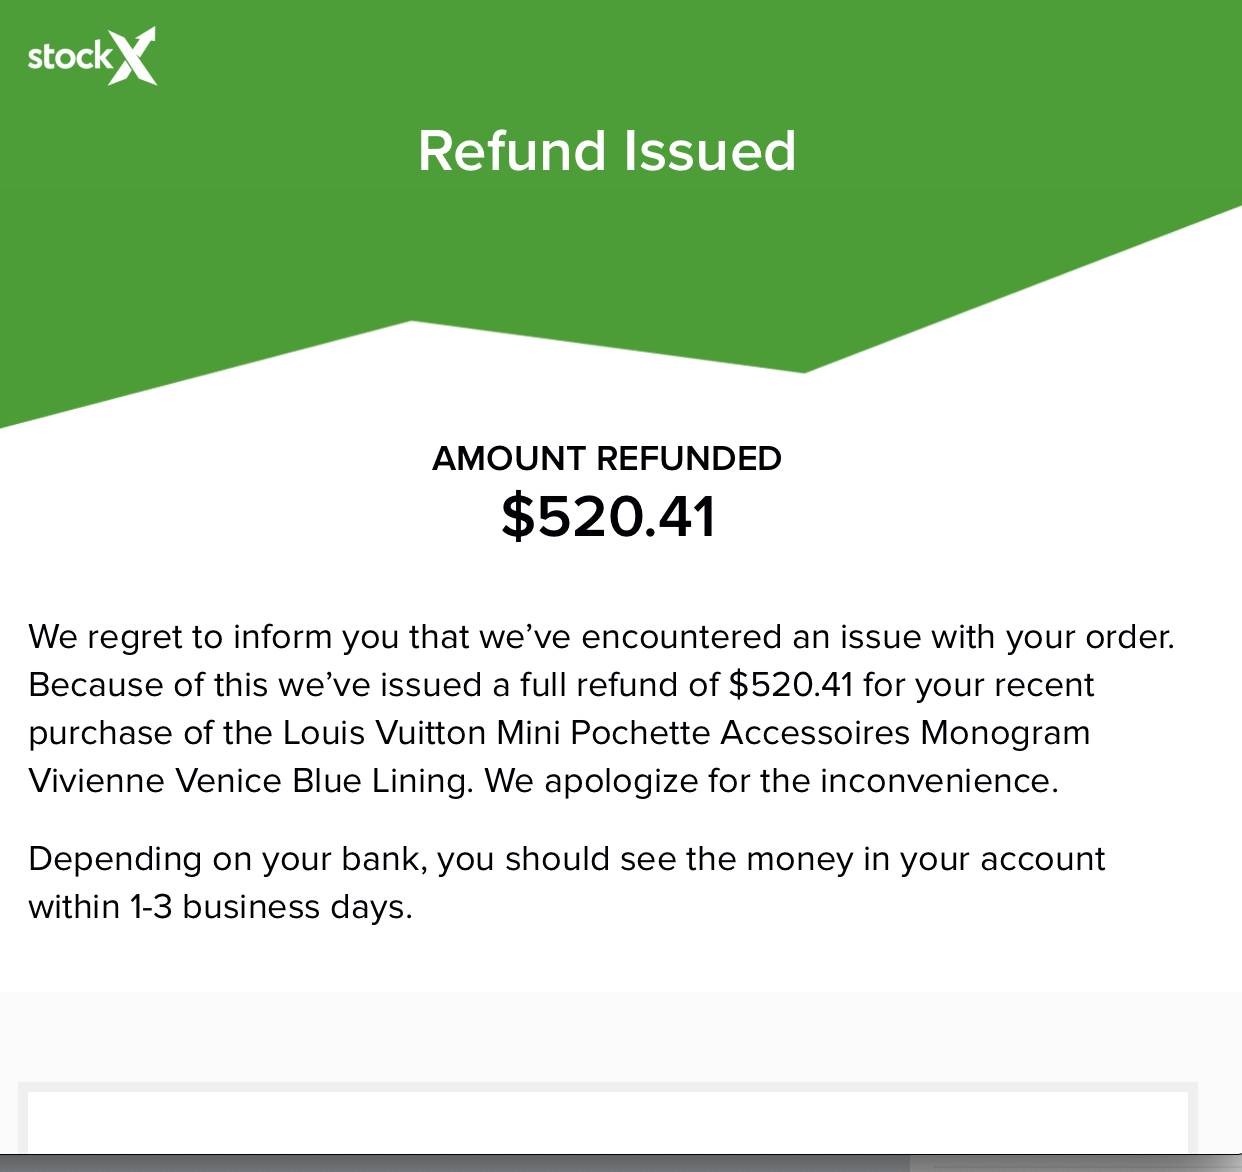 StockX refund